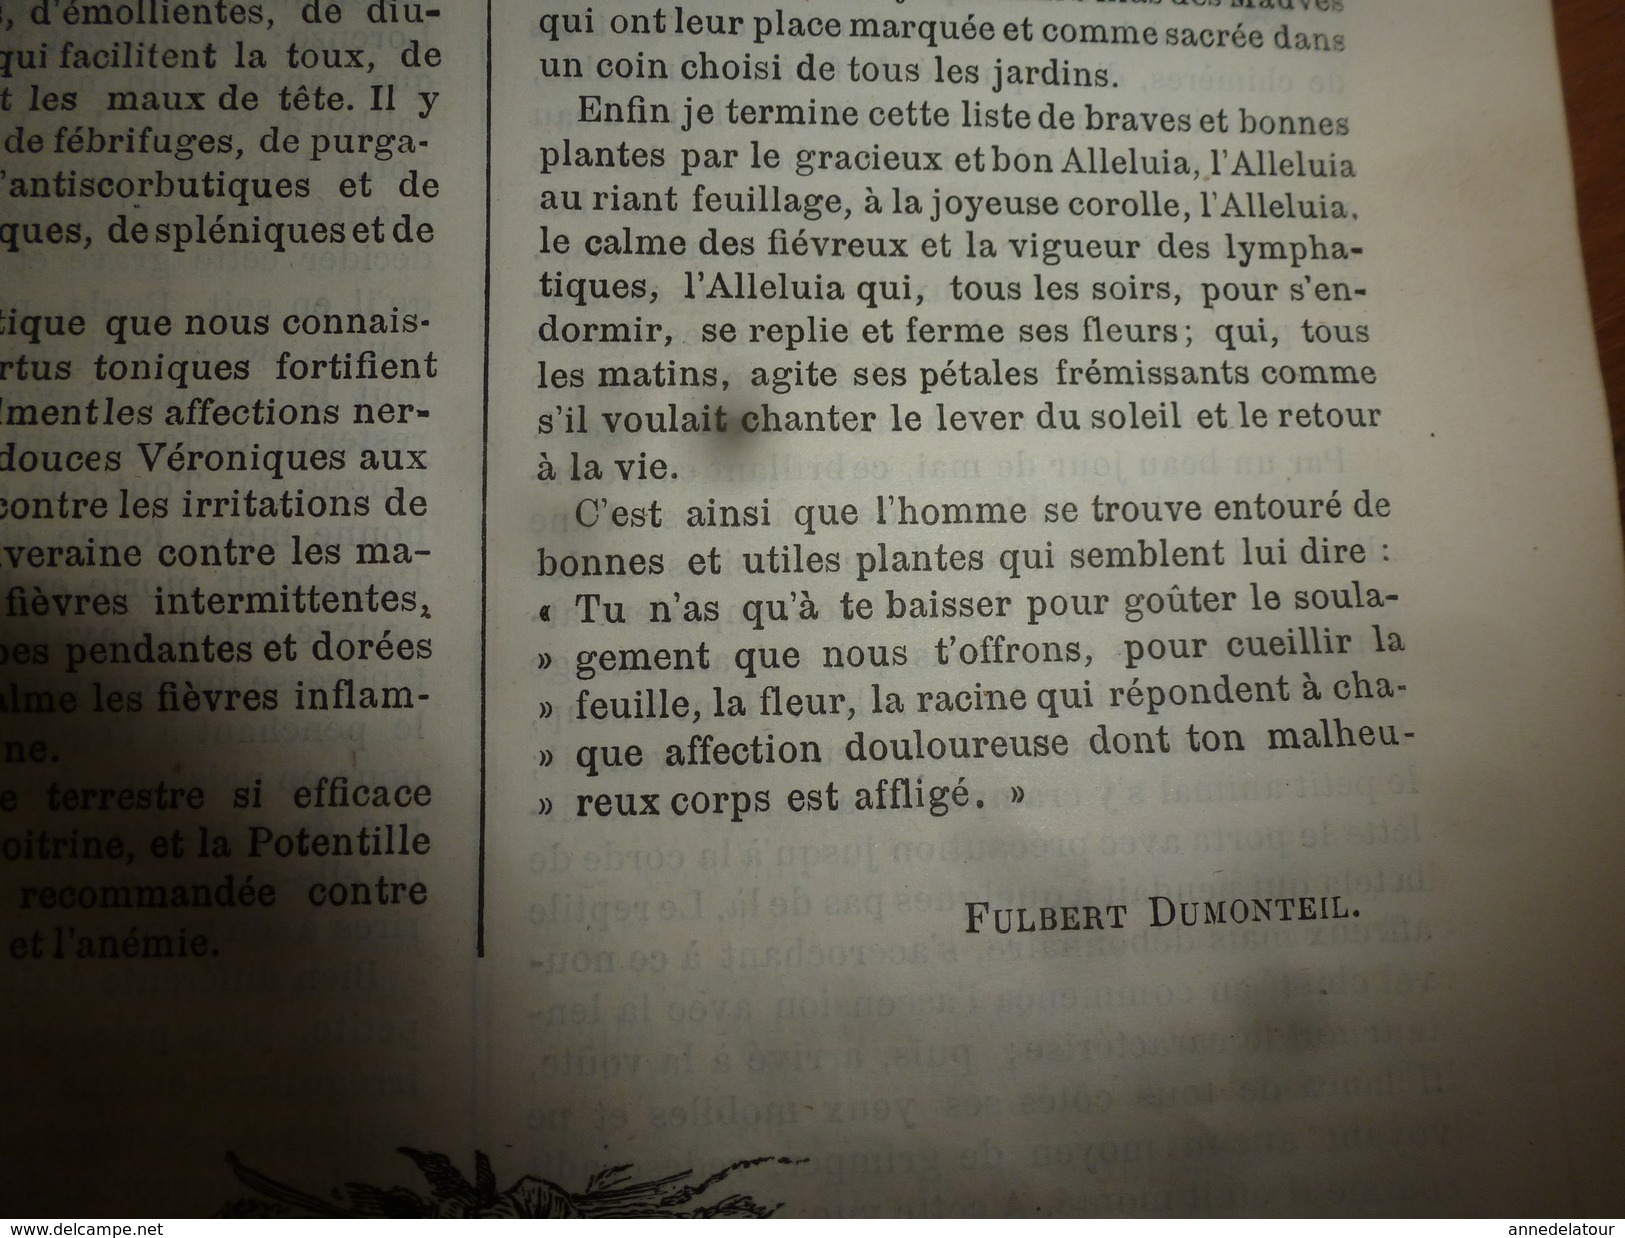 1883 JOURNAL DES DEMOISELLES  :Mémoires du comte de Ségur; L'arbre de BOSCOBEL ;Correspondance; Revue musicale ;etc